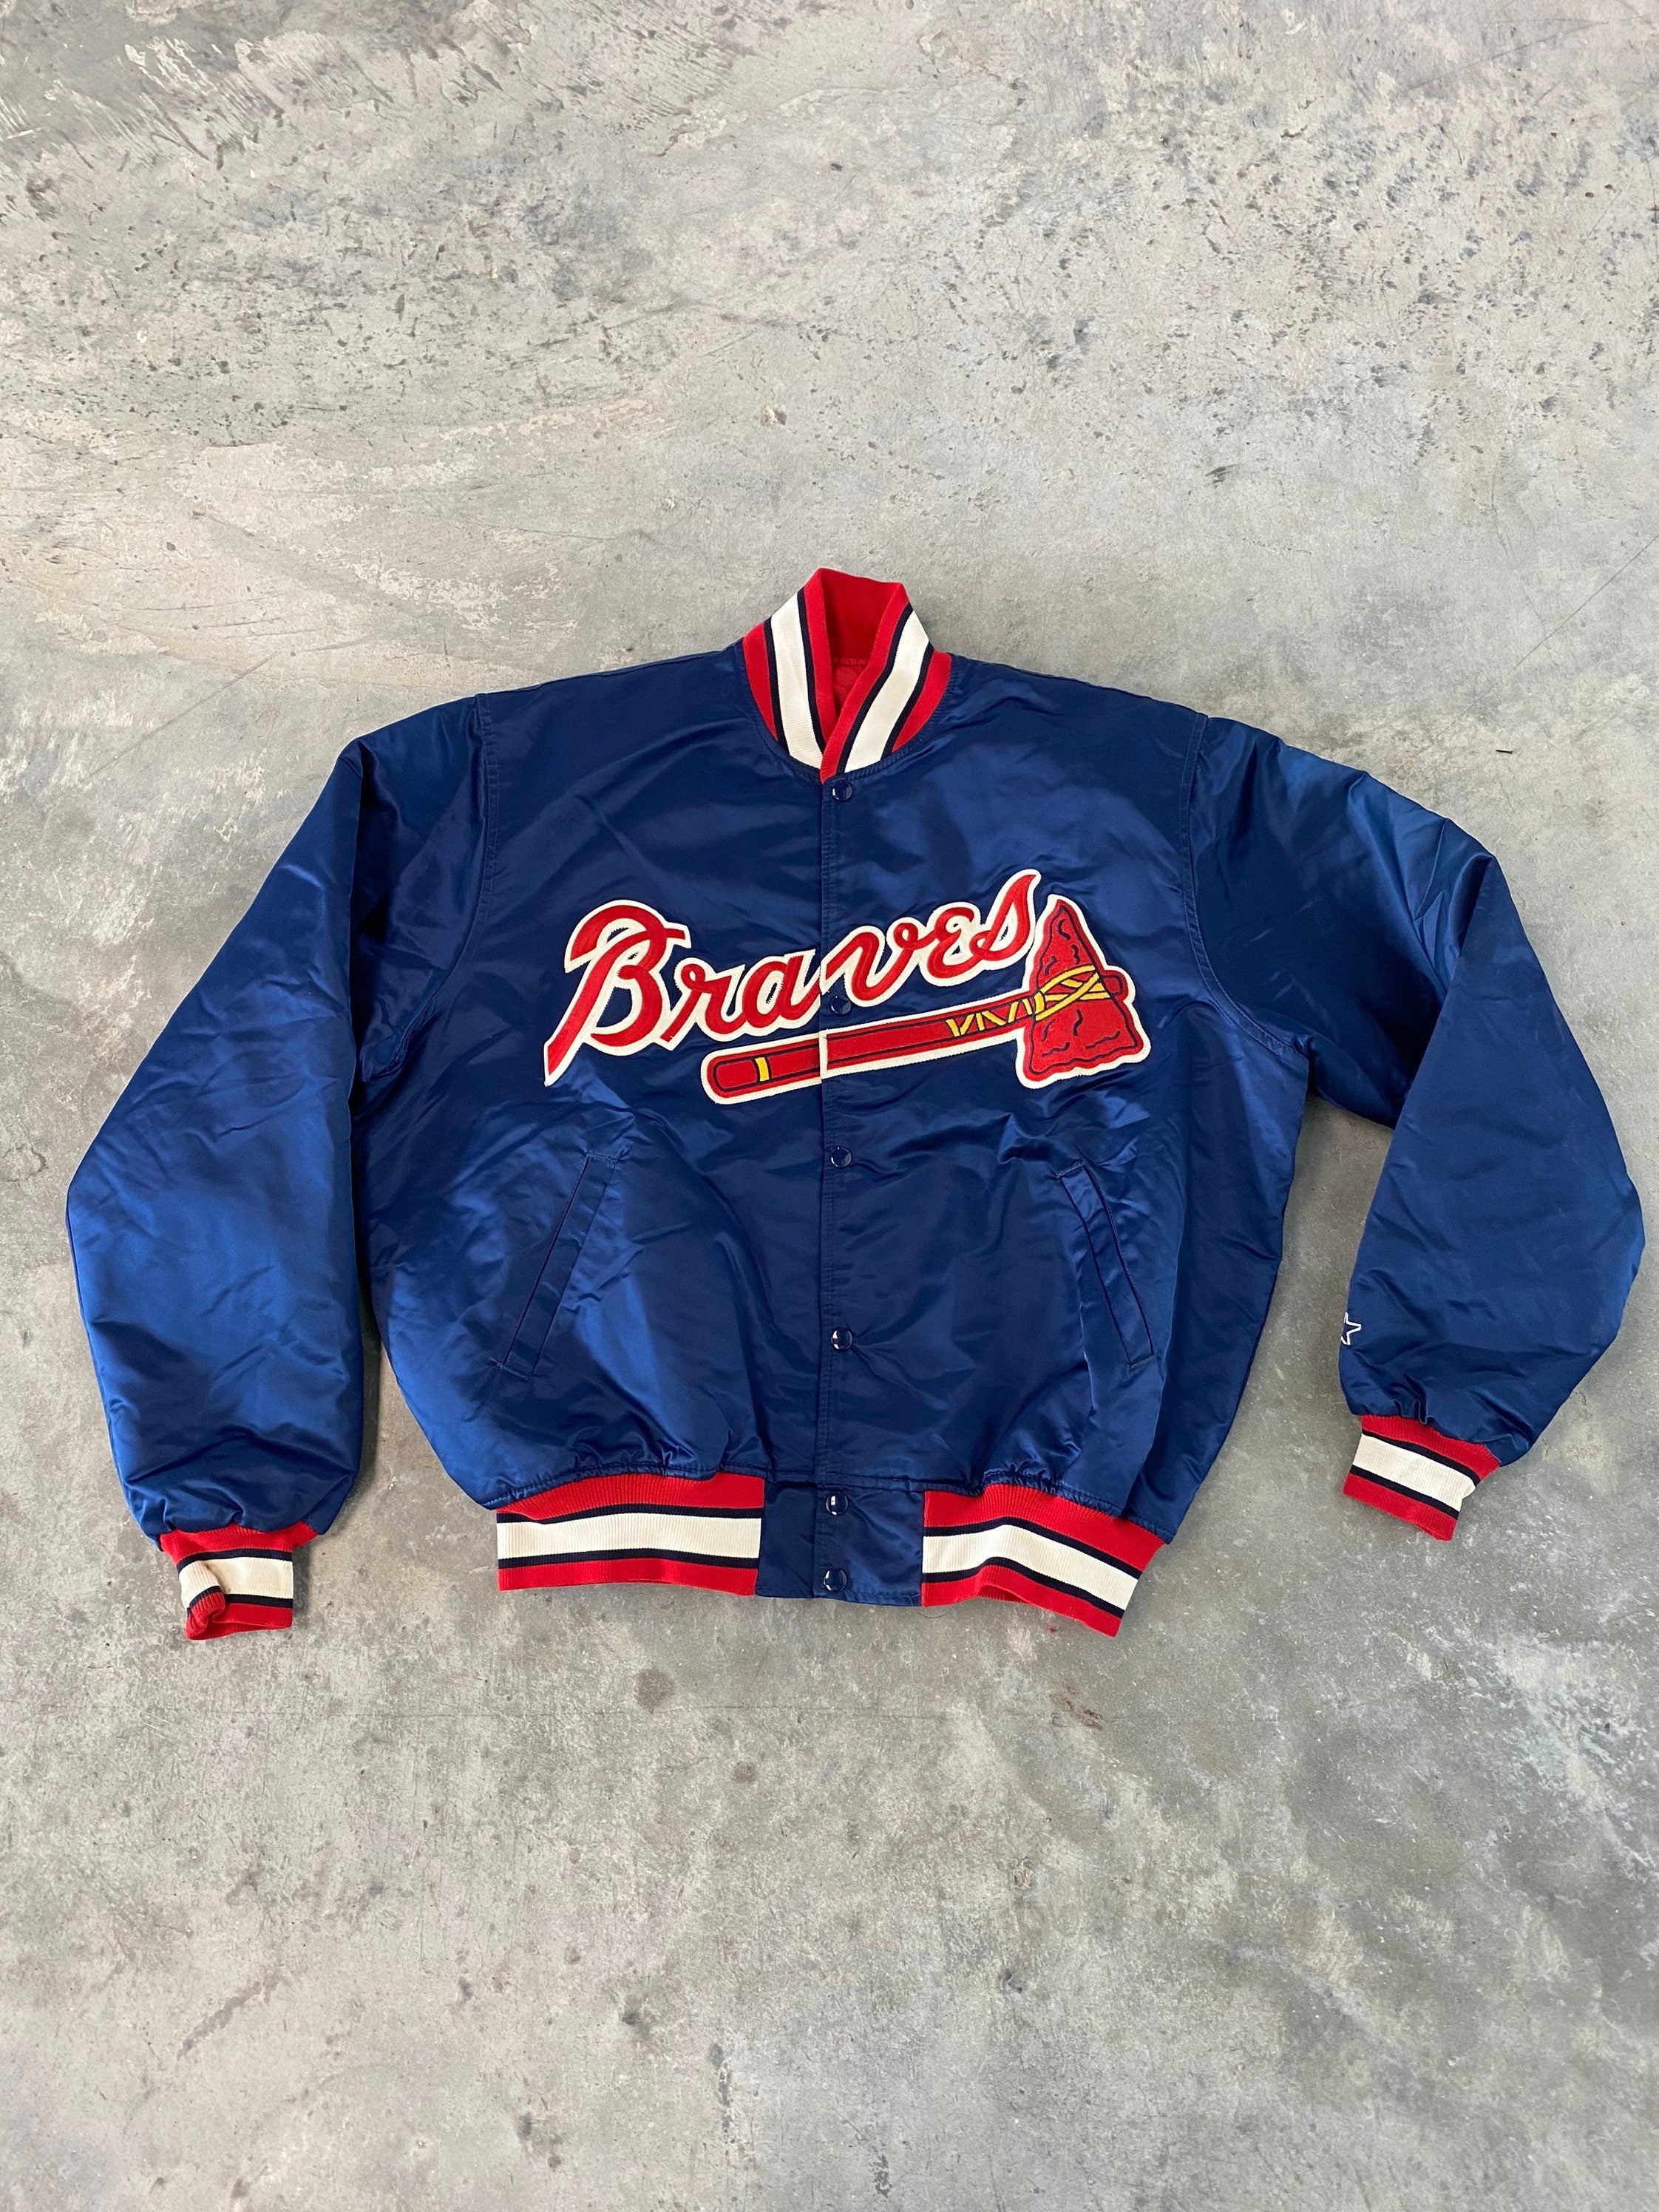 Vintage Atlanta Braves Starter Jacket size Large